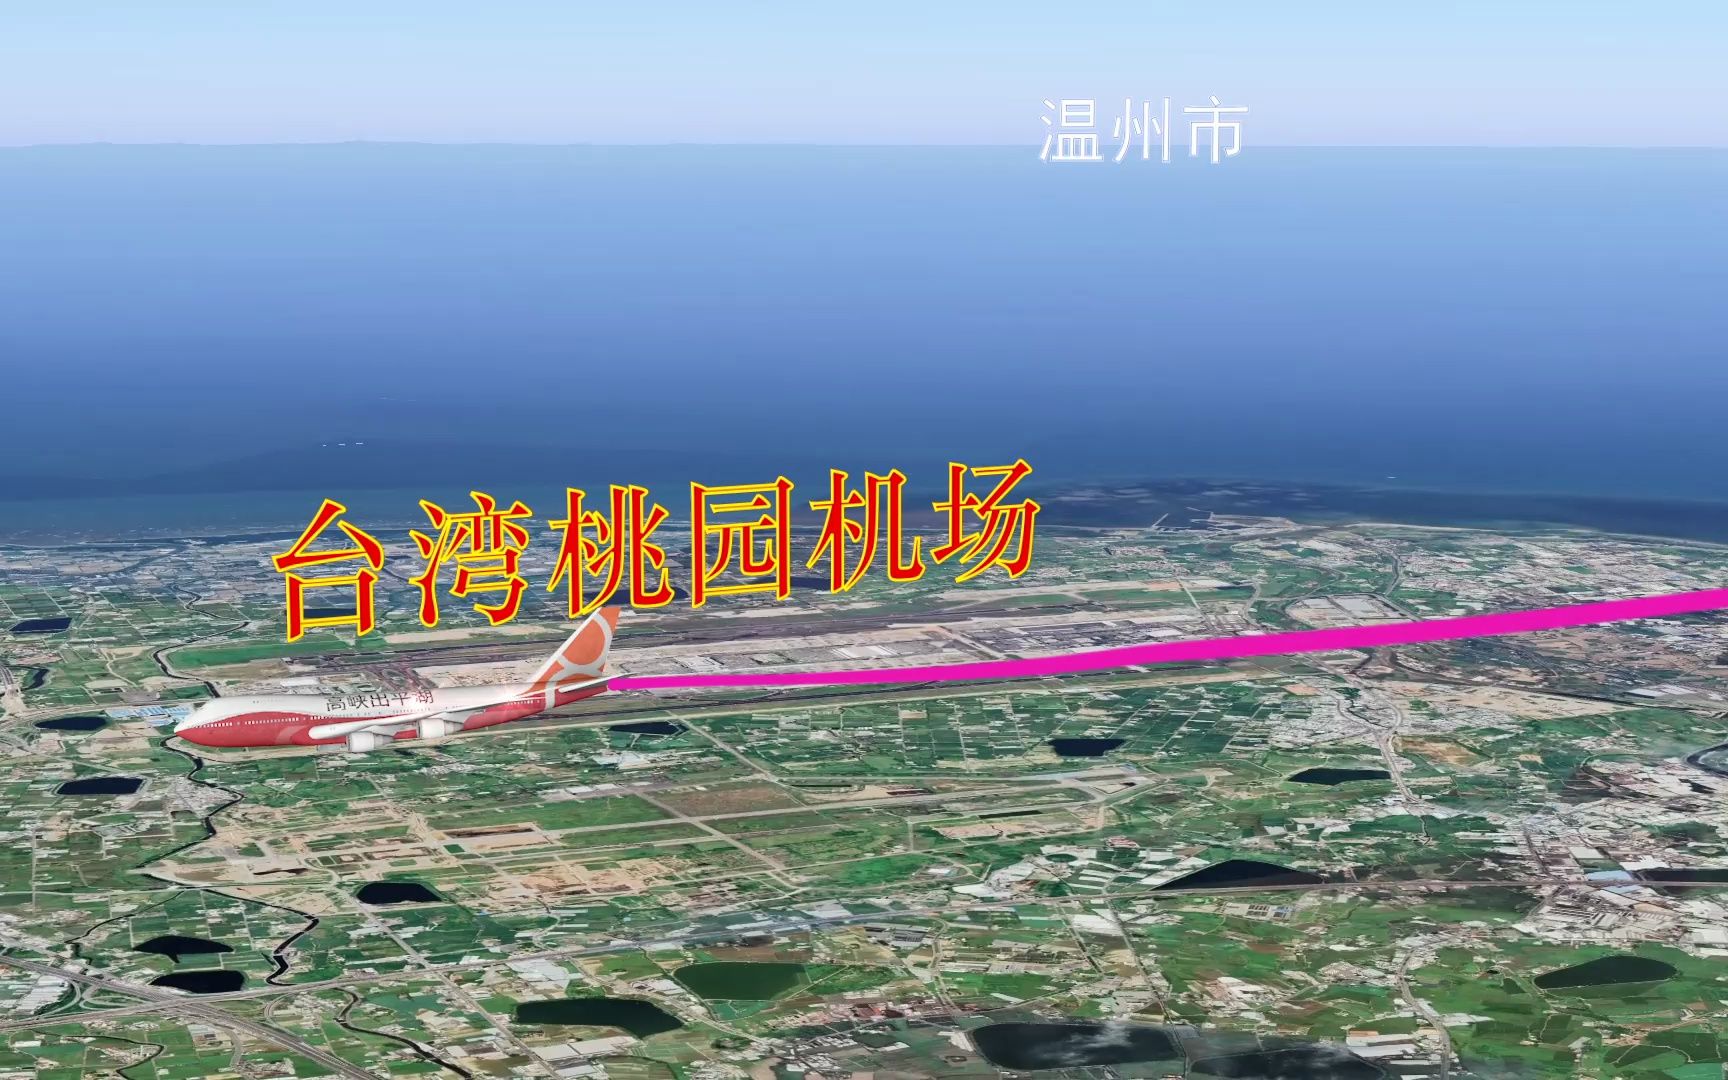 香港国际机场飞台湾桃园机场,航程806公里,飞行时间1小时37分